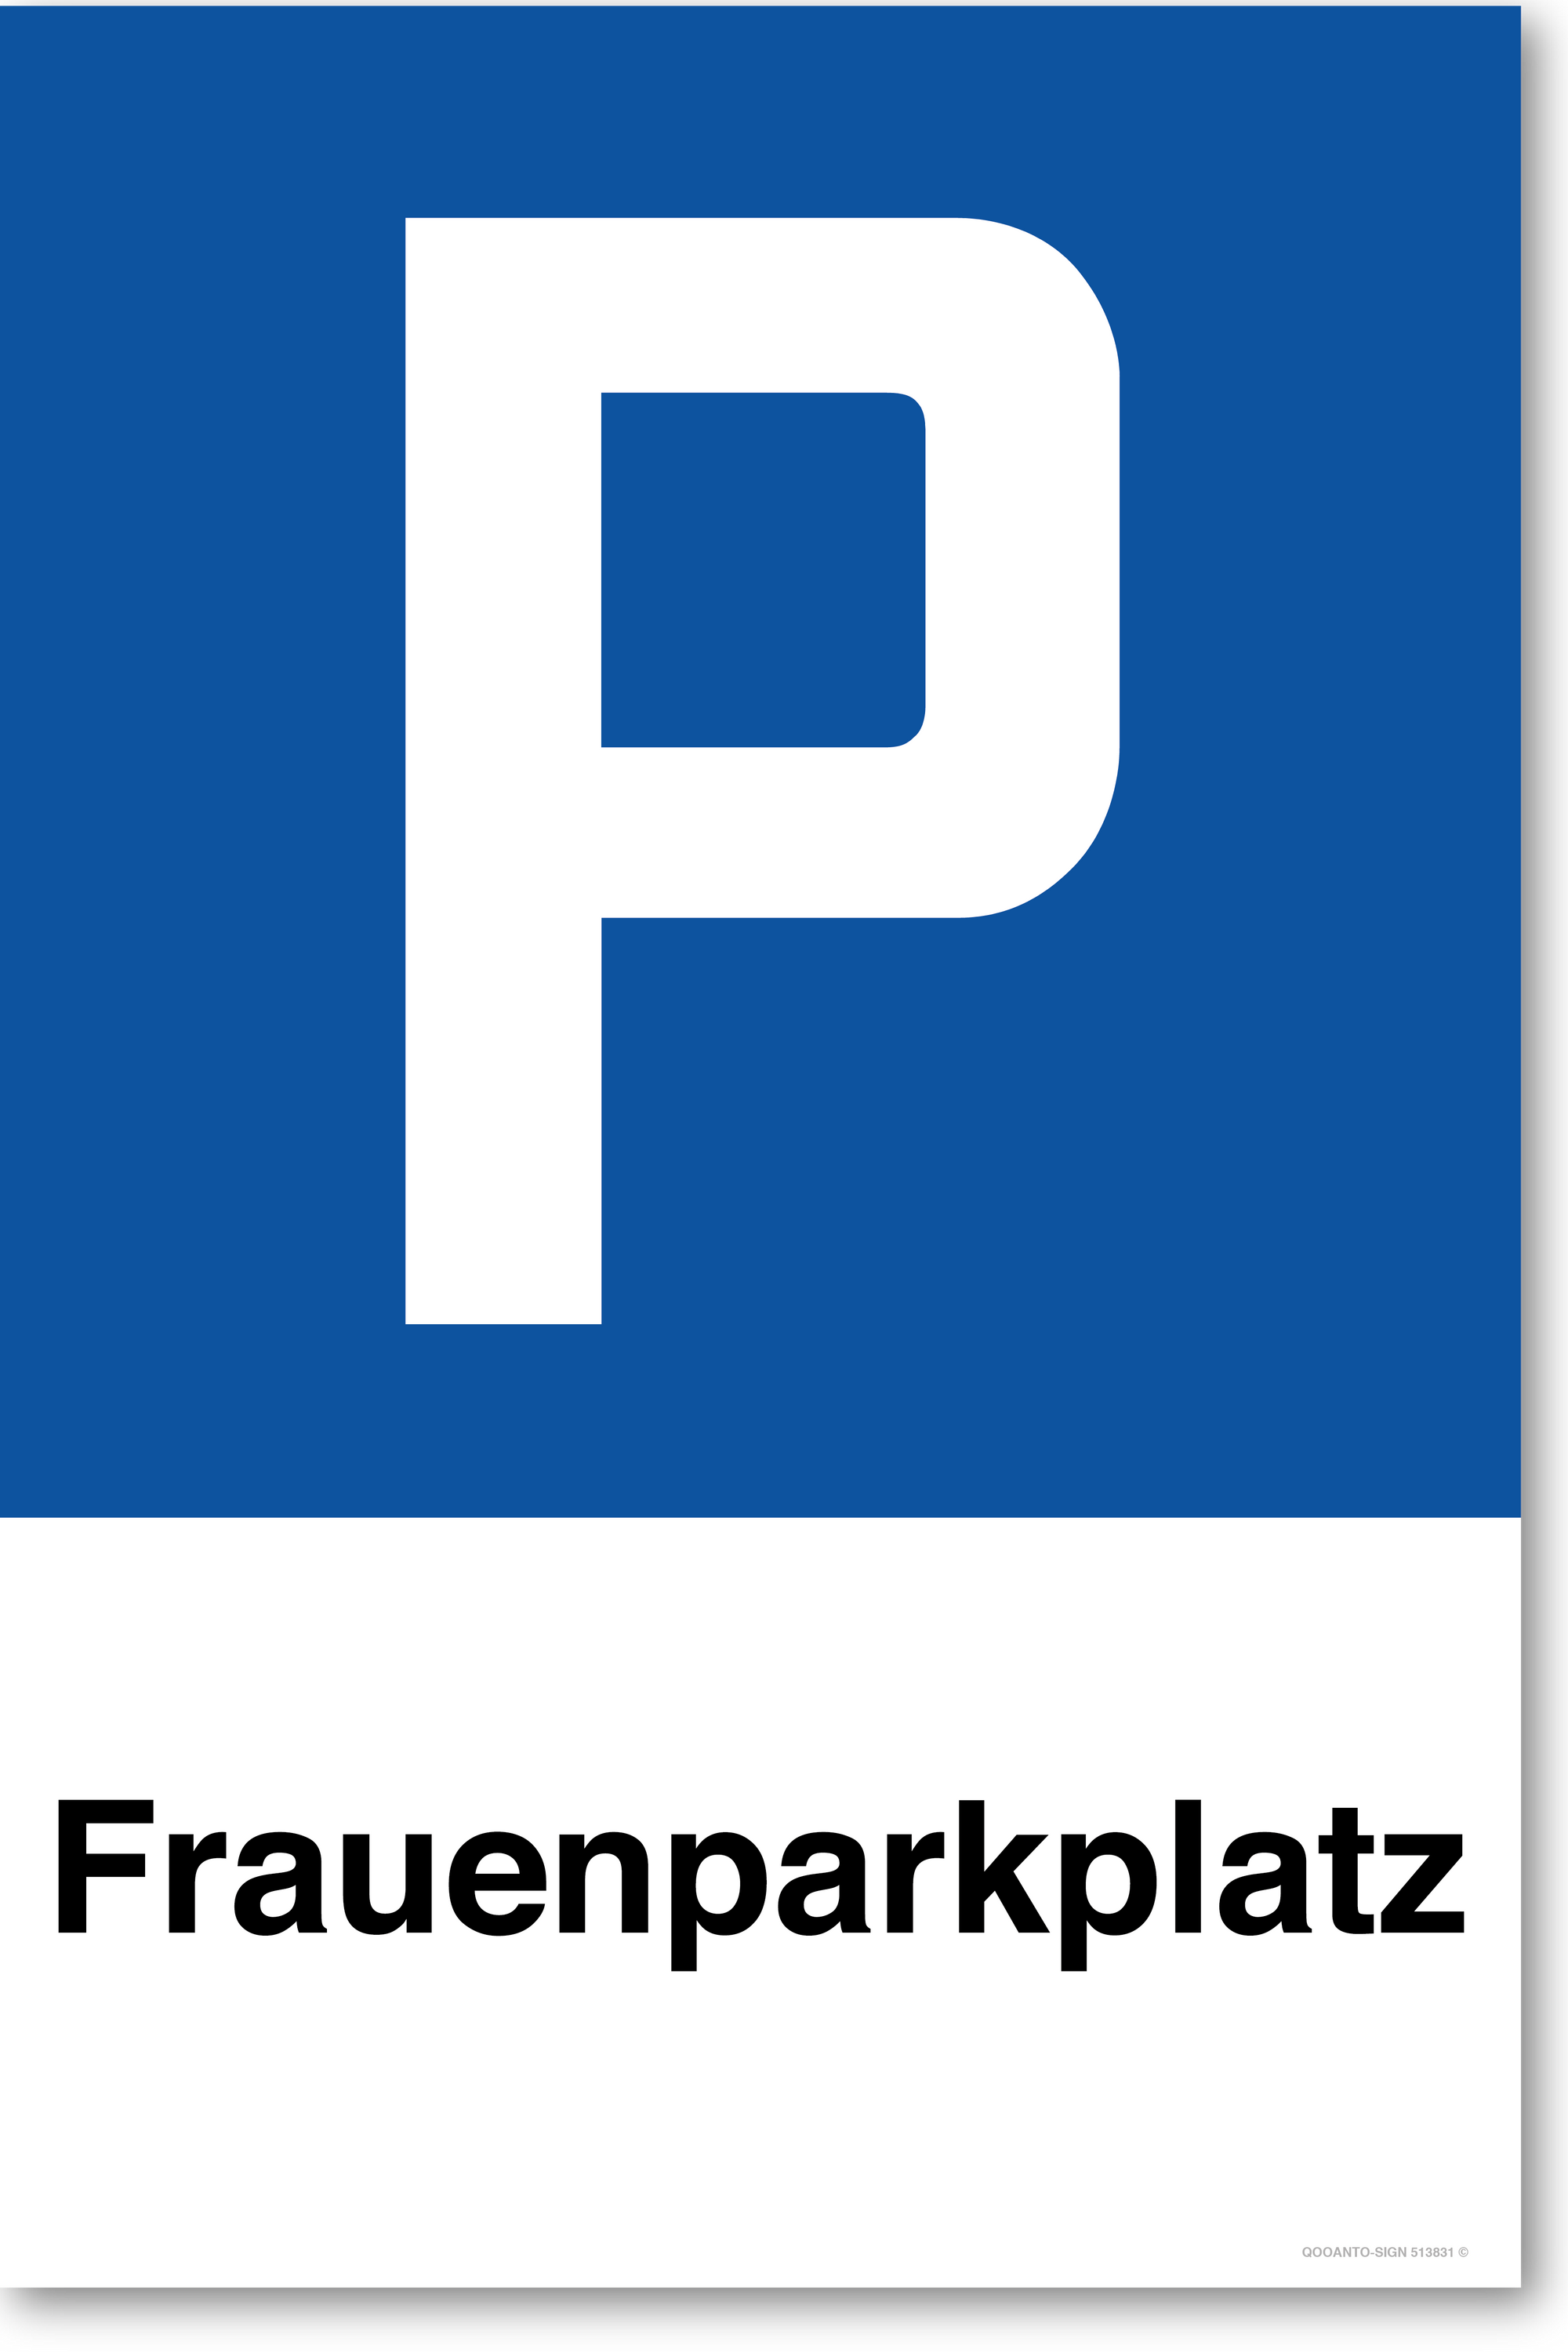 Frauenparkplatz - Parkplatzschild hochformat